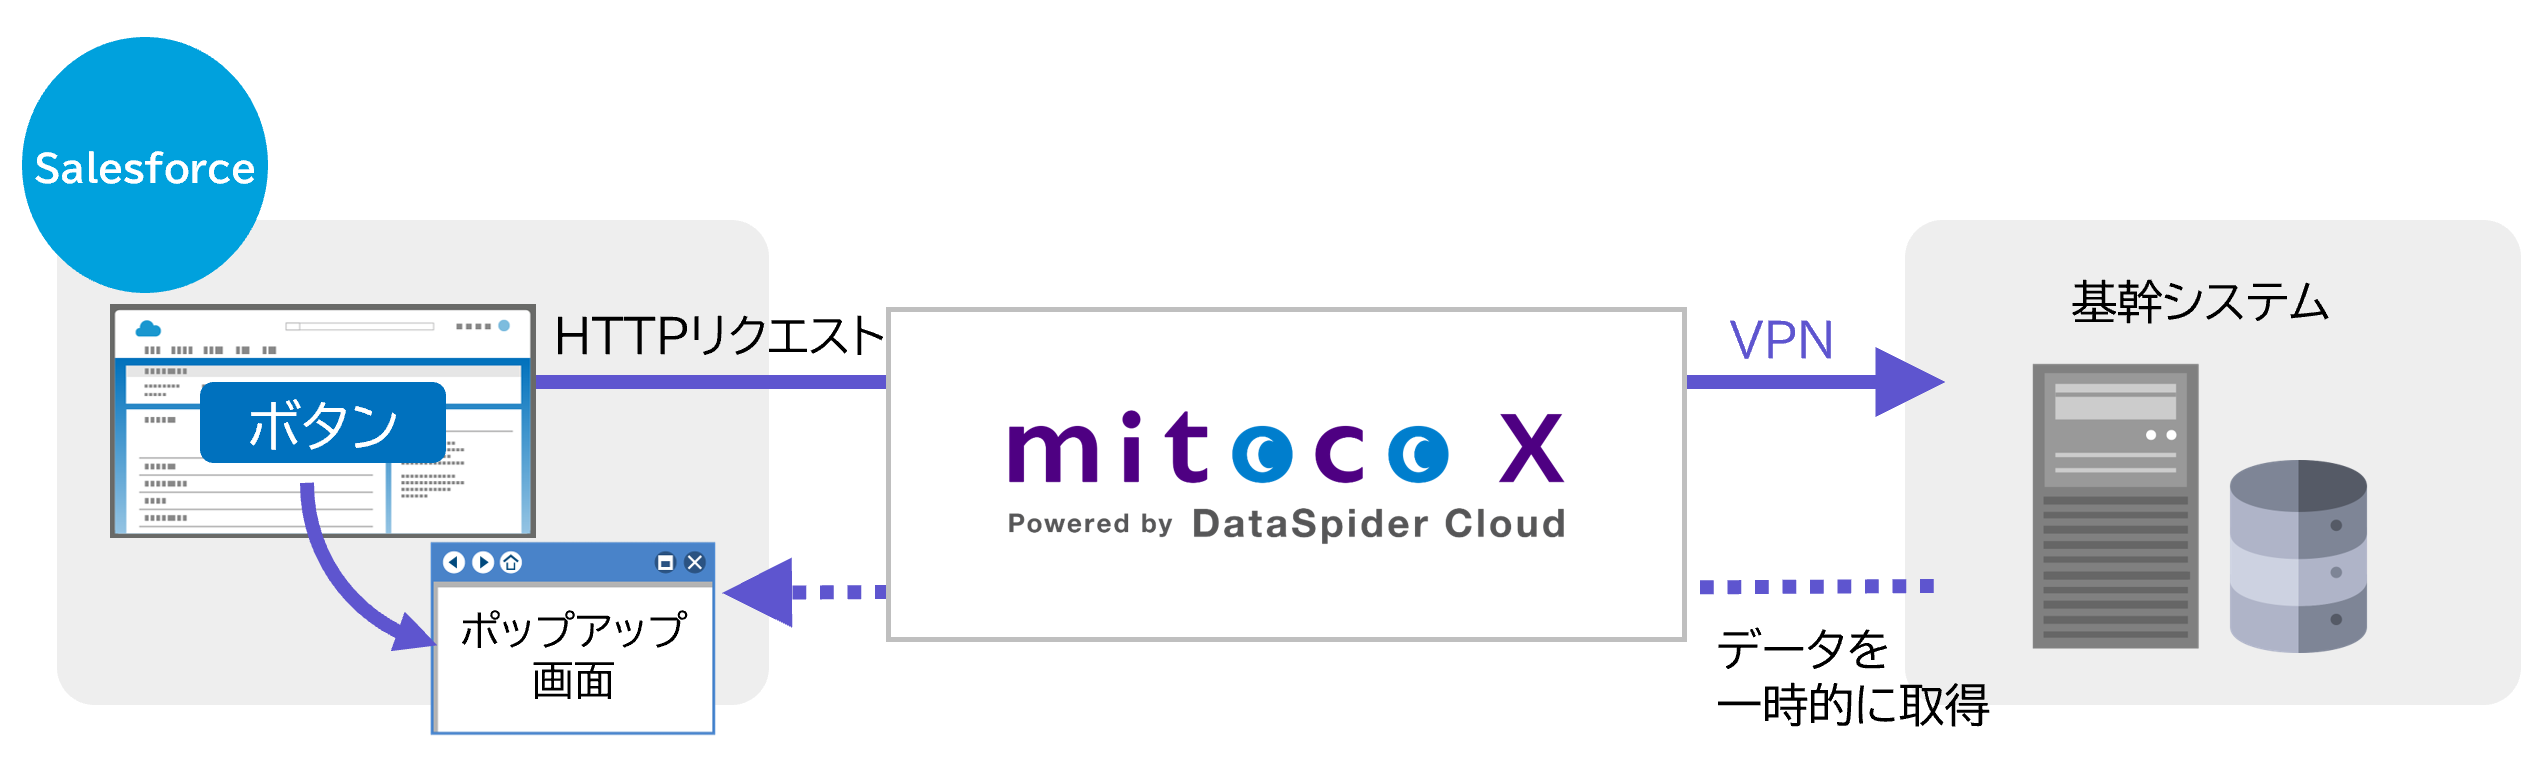 Salesforce上のボタンを押すとmitoco Xが呼び出され、関連するレコードをリアルタイムに基幹システムから取得し画面表示。